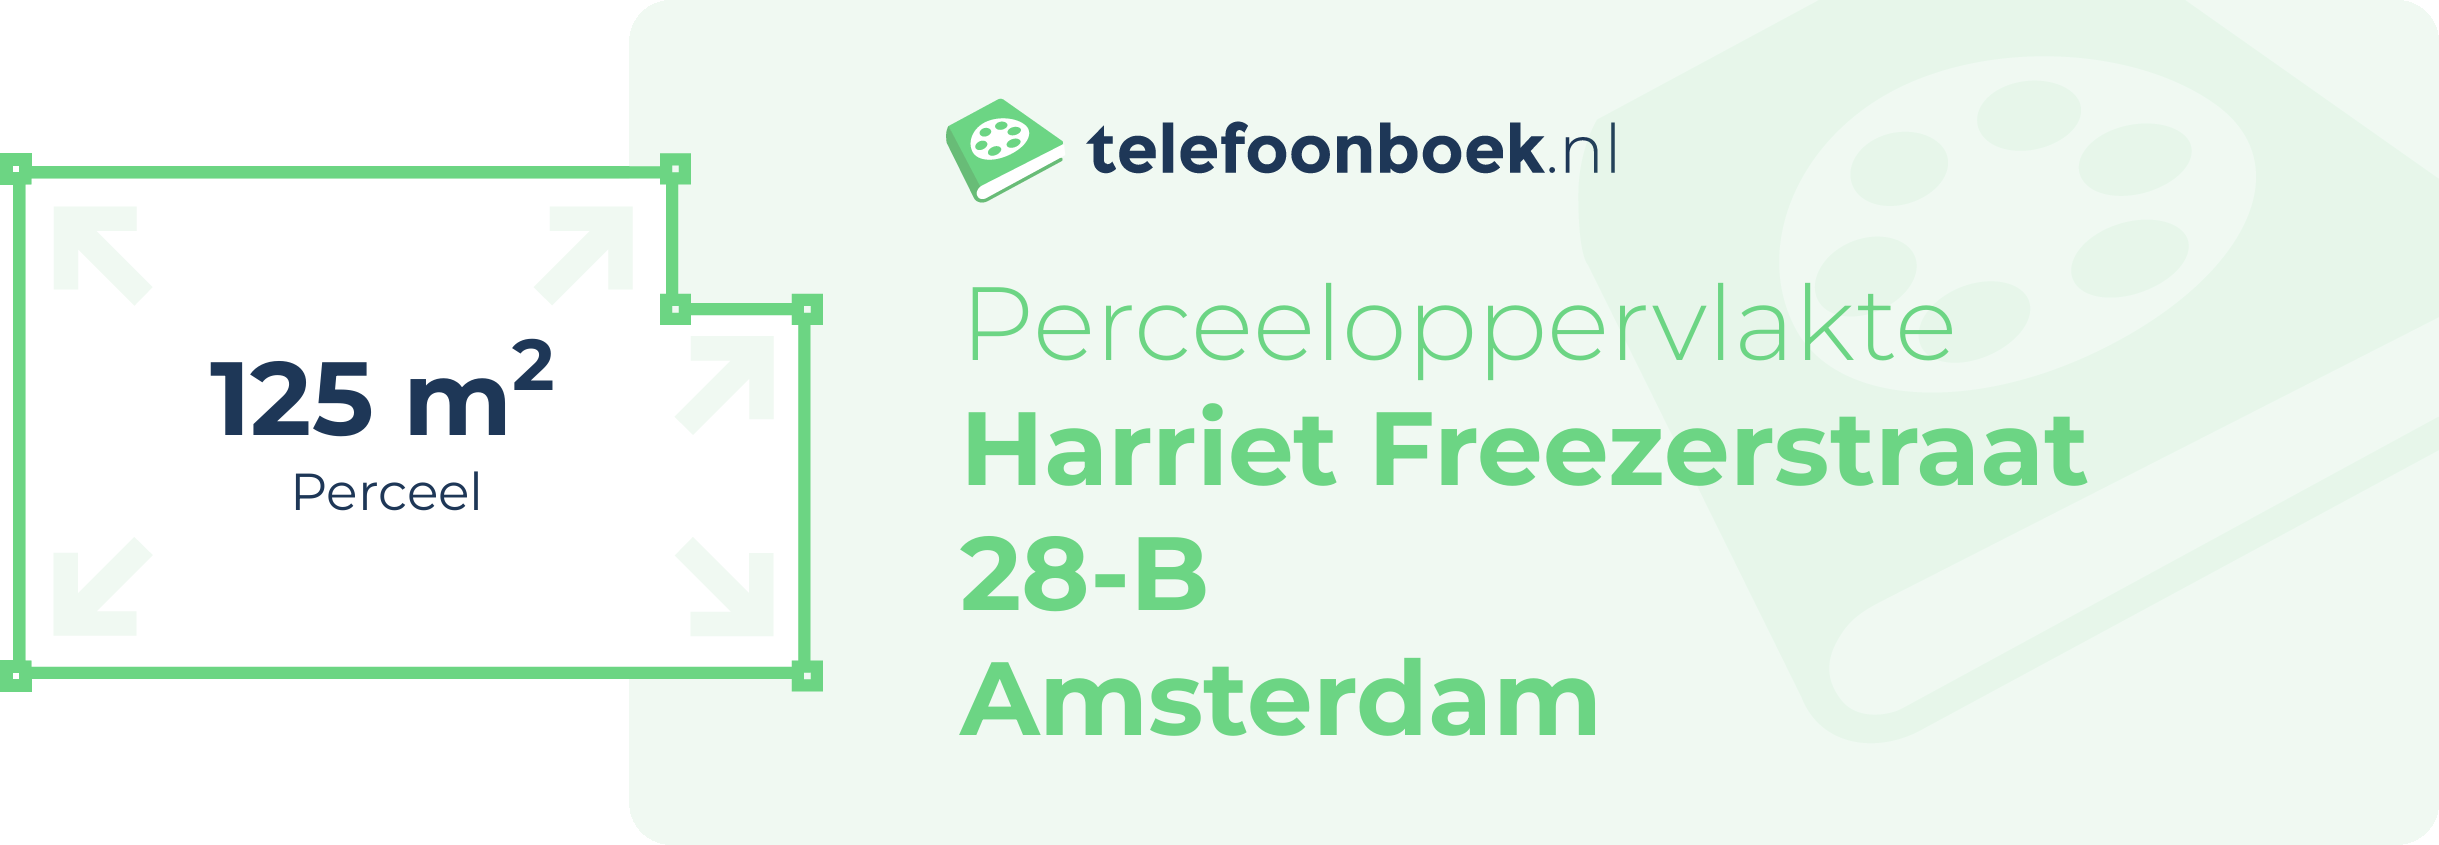 Perceeloppervlakte Harriet Freezerstraat 28-B Amsterdam